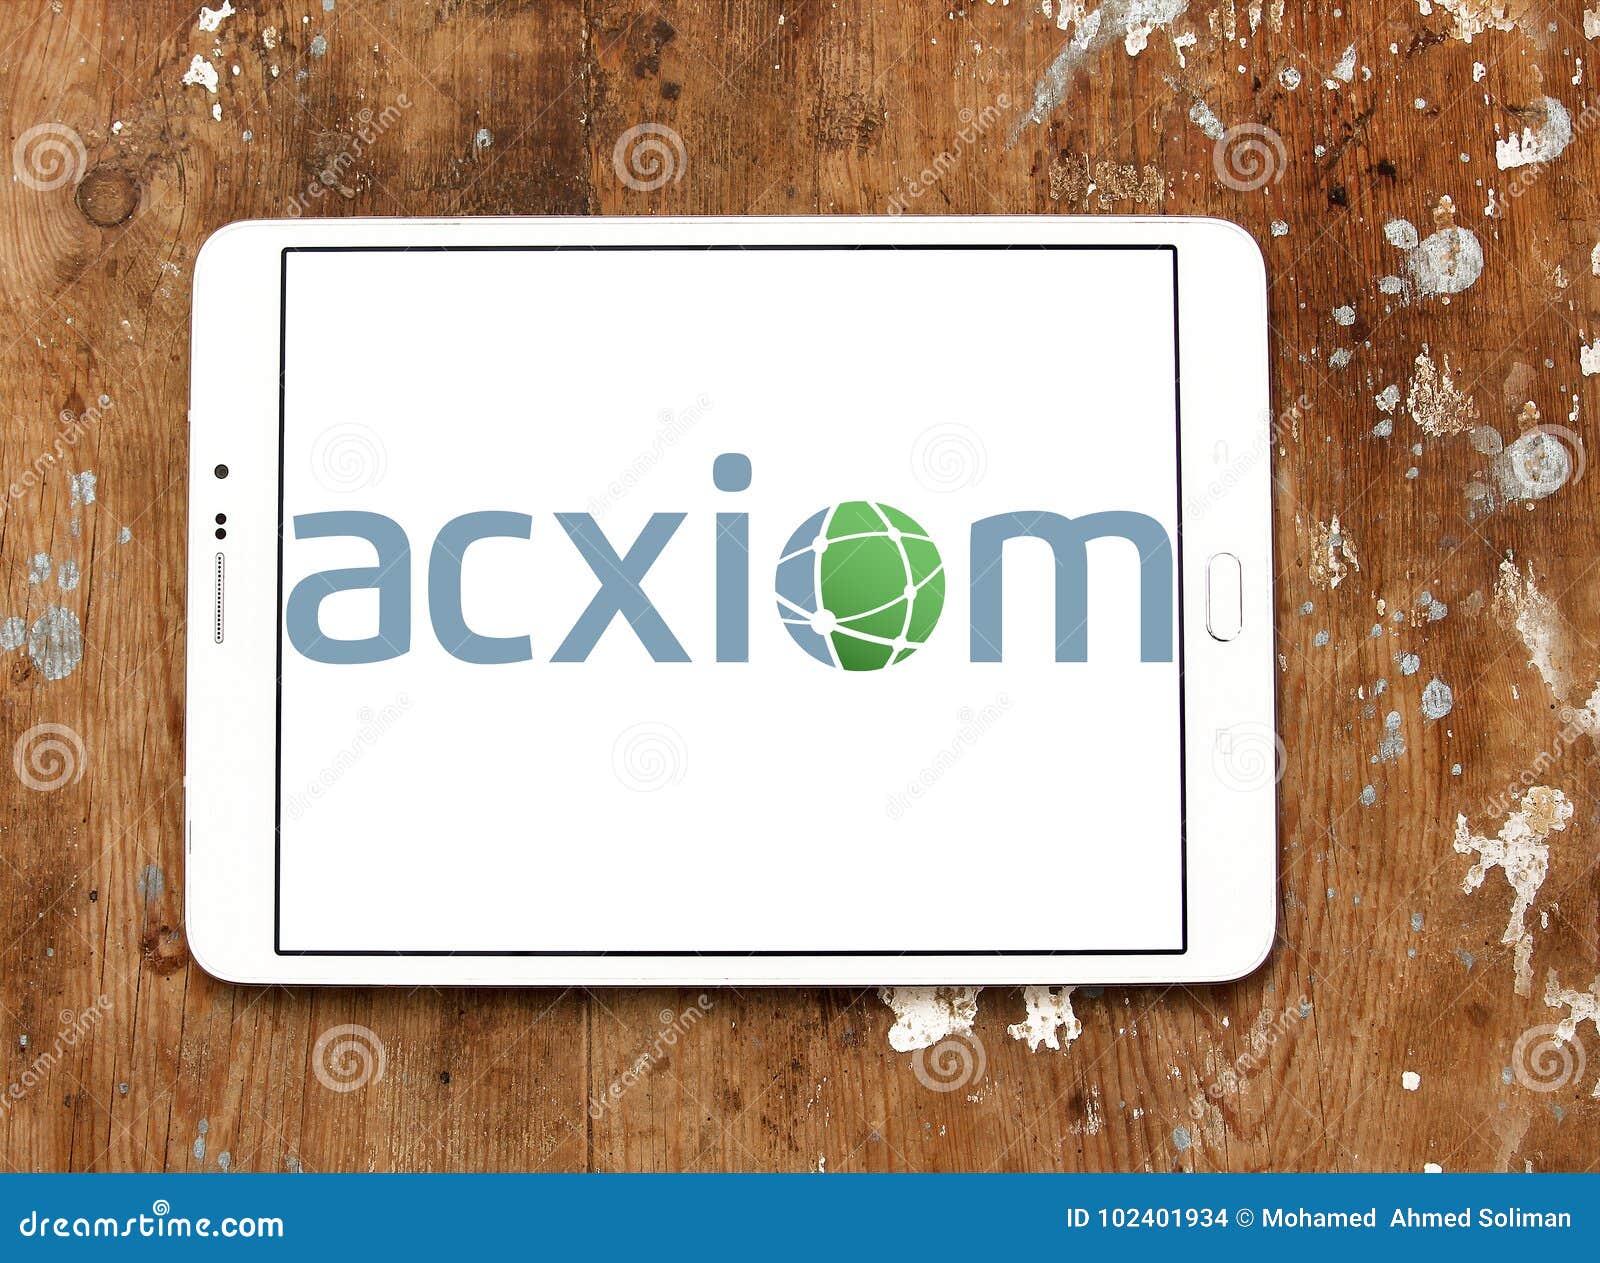 Acxiom Corporation, một trong những công ty có trụ sở tại Conway, Arkansas, Mỹ, được biết đến với sự chuyên nghiệp và khả năng biên tập hình ảnh tuyệt vời. Với logo của họ, bạn sẽ tìm thấy sự độc đáo và sáng tạo, tạo ra một sự ấn tượng mạnh mẽ.